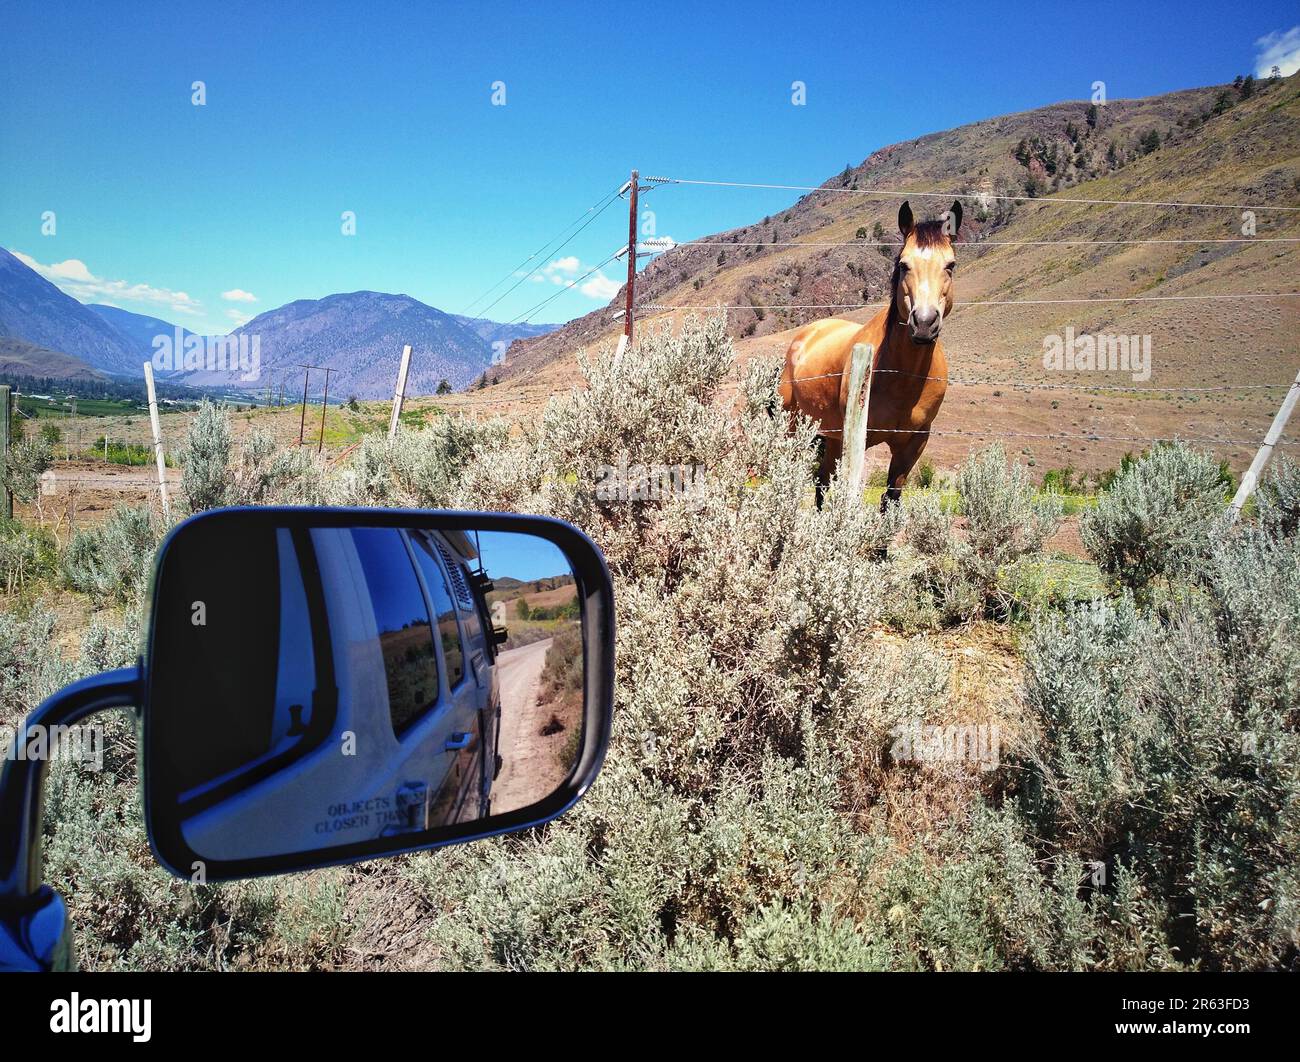 Vue latérale ou rare miroir donnant sur un cheval sauvage. Emplacement : Oliver Cawston Road, vallée de l'Okanagan, Colombie-Britannique, Canada. Banque D'Images